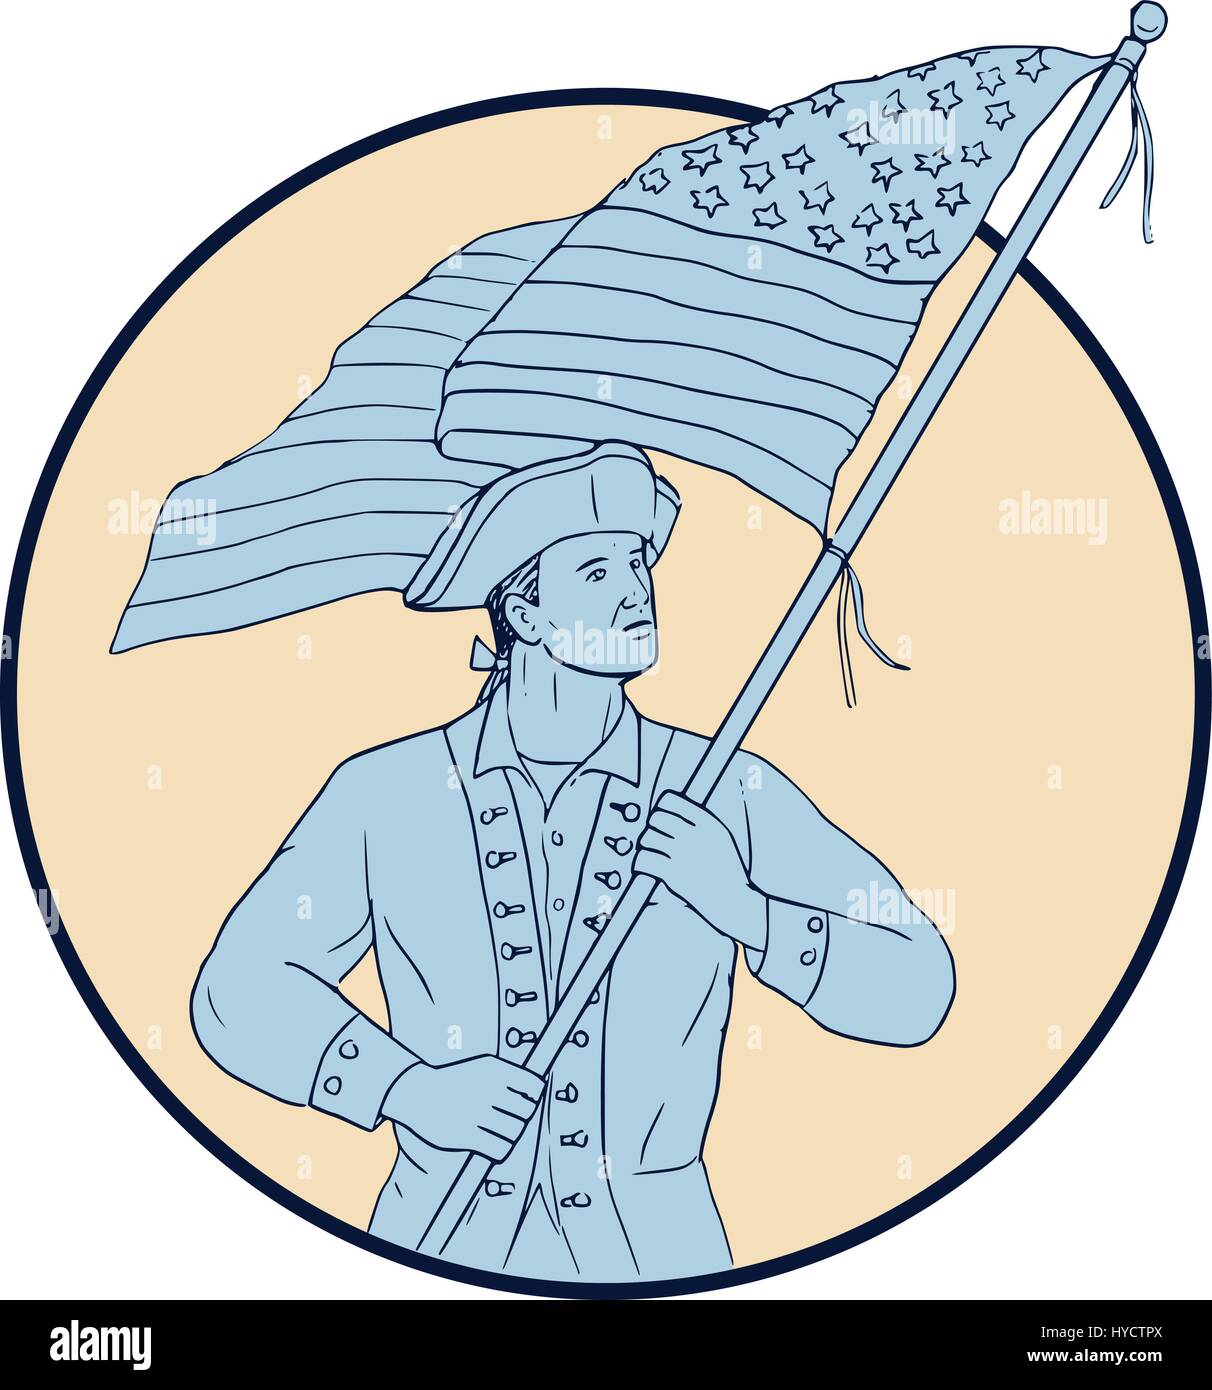 Schizzo di disegno illustrazione dello stile di un american patriot portando sventola bandiera degli Stati Uniti guardando al lato visto dal lato anteriore impostato all'interno del cerchio. Illustrazione Vettoriale